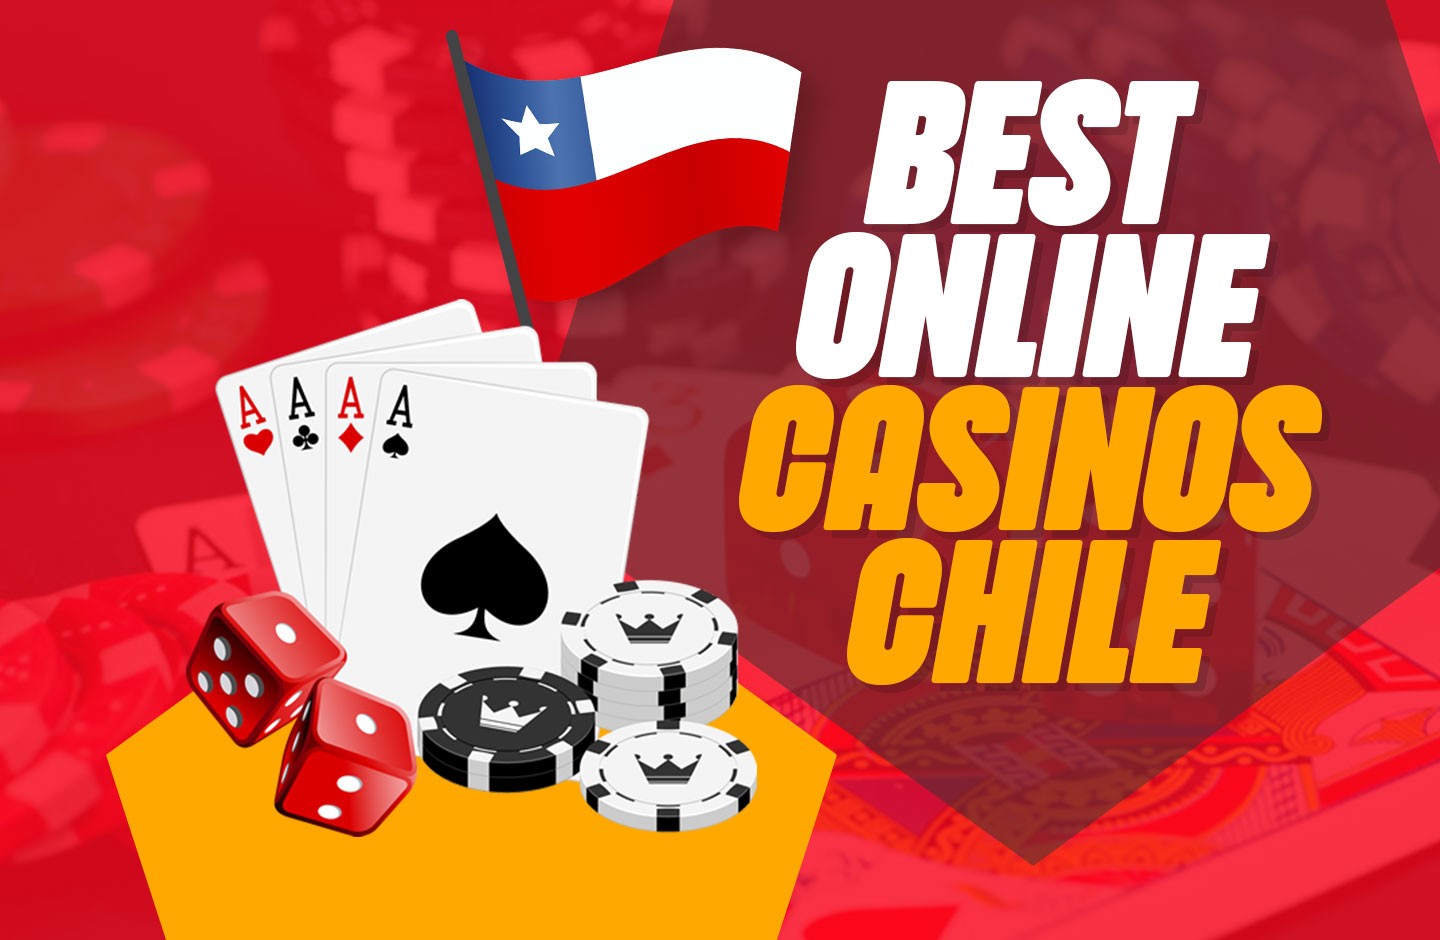 casinos online chile - Preste atención a estas 25 señales